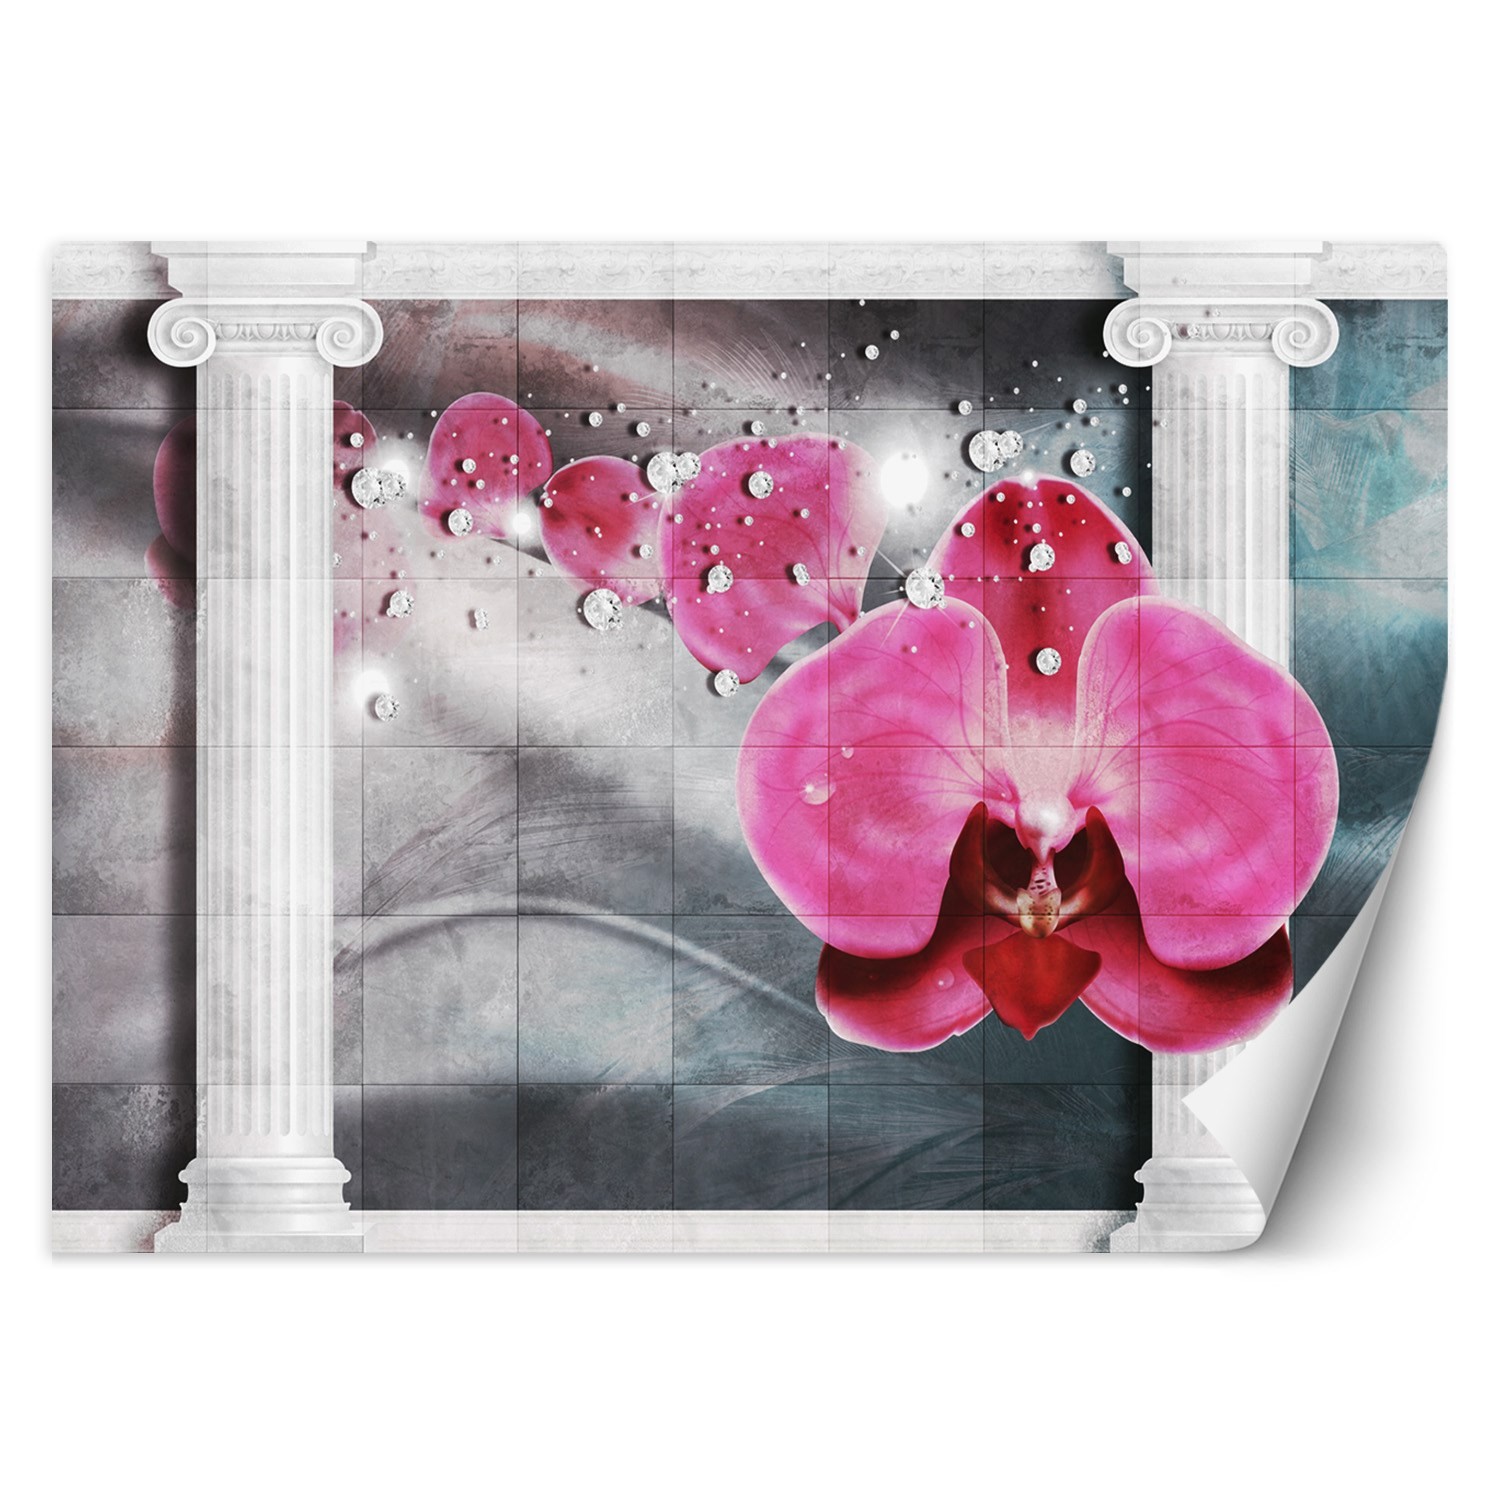 Trend24 – Behang – Roze Orchideebloem – Behangpapier – Fotobehang 3D – Behang Woonkamer – 450x315x2 cm – Incl. behanglijm